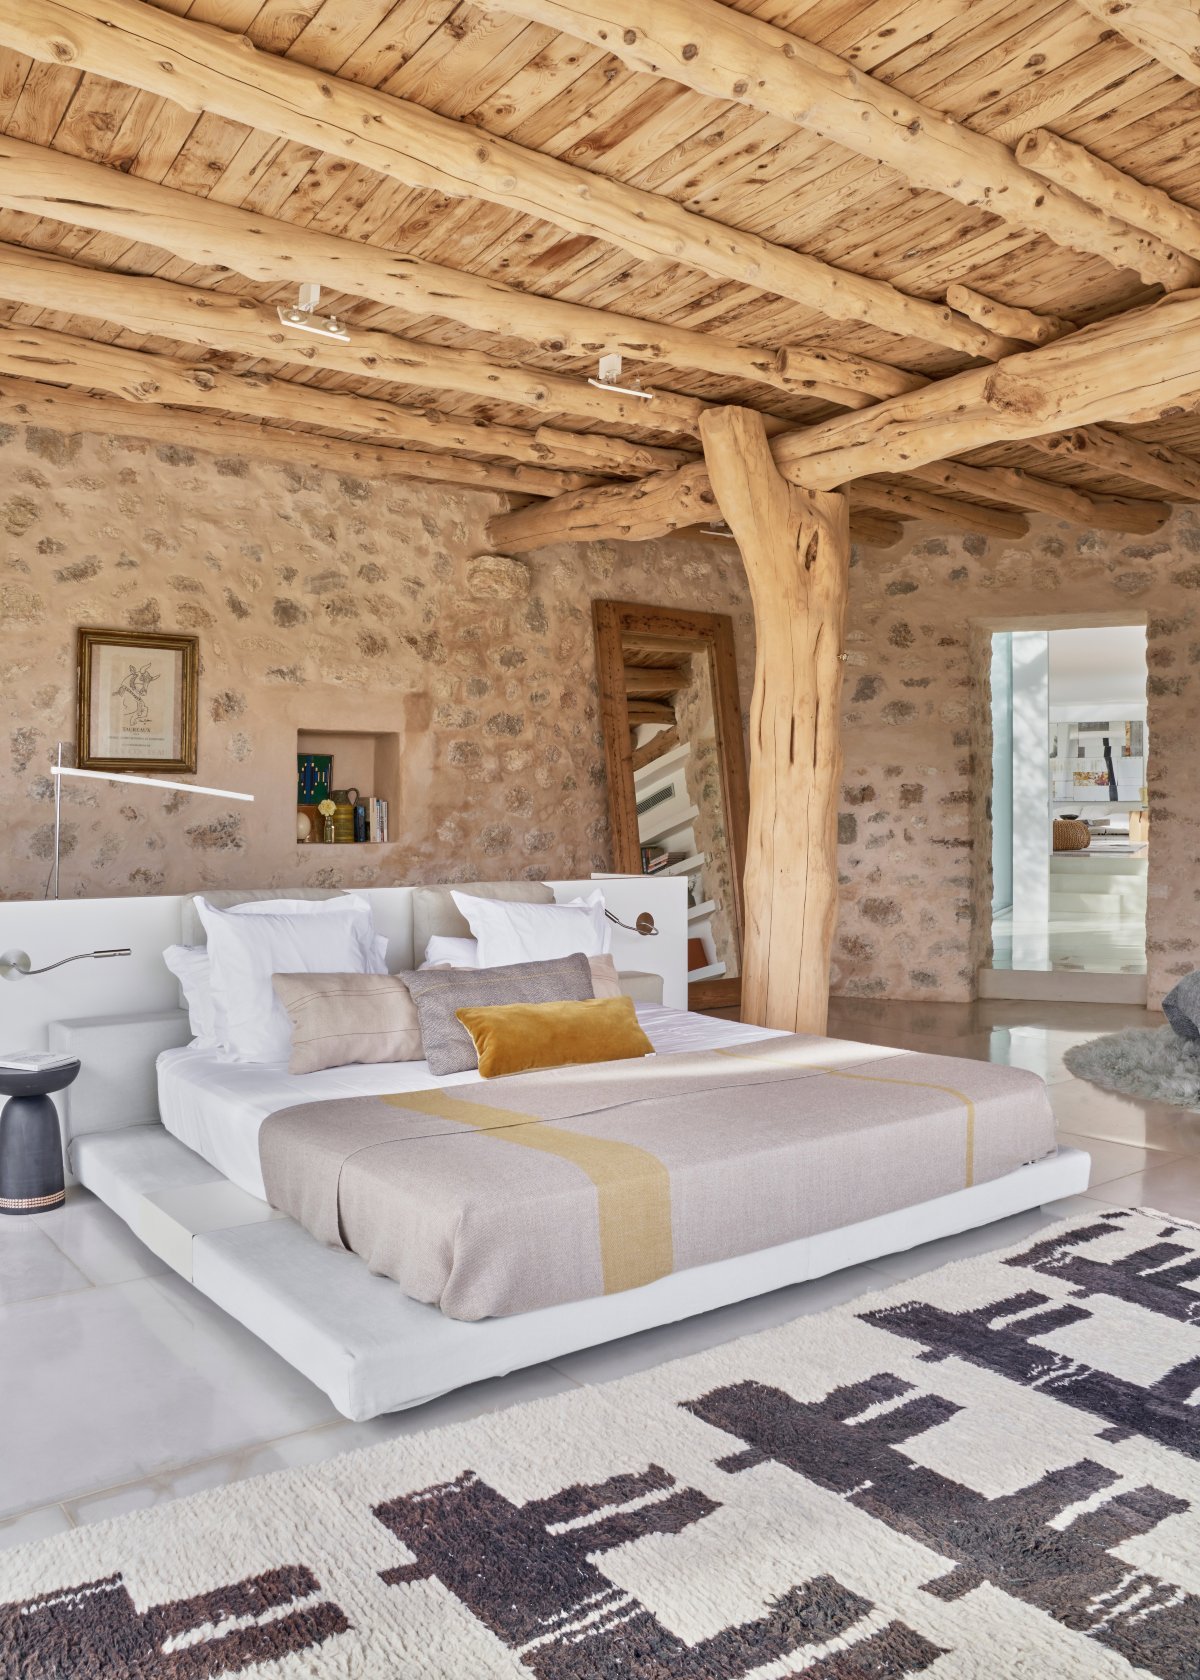 Dormitorio rústico con techo de troncos de madera